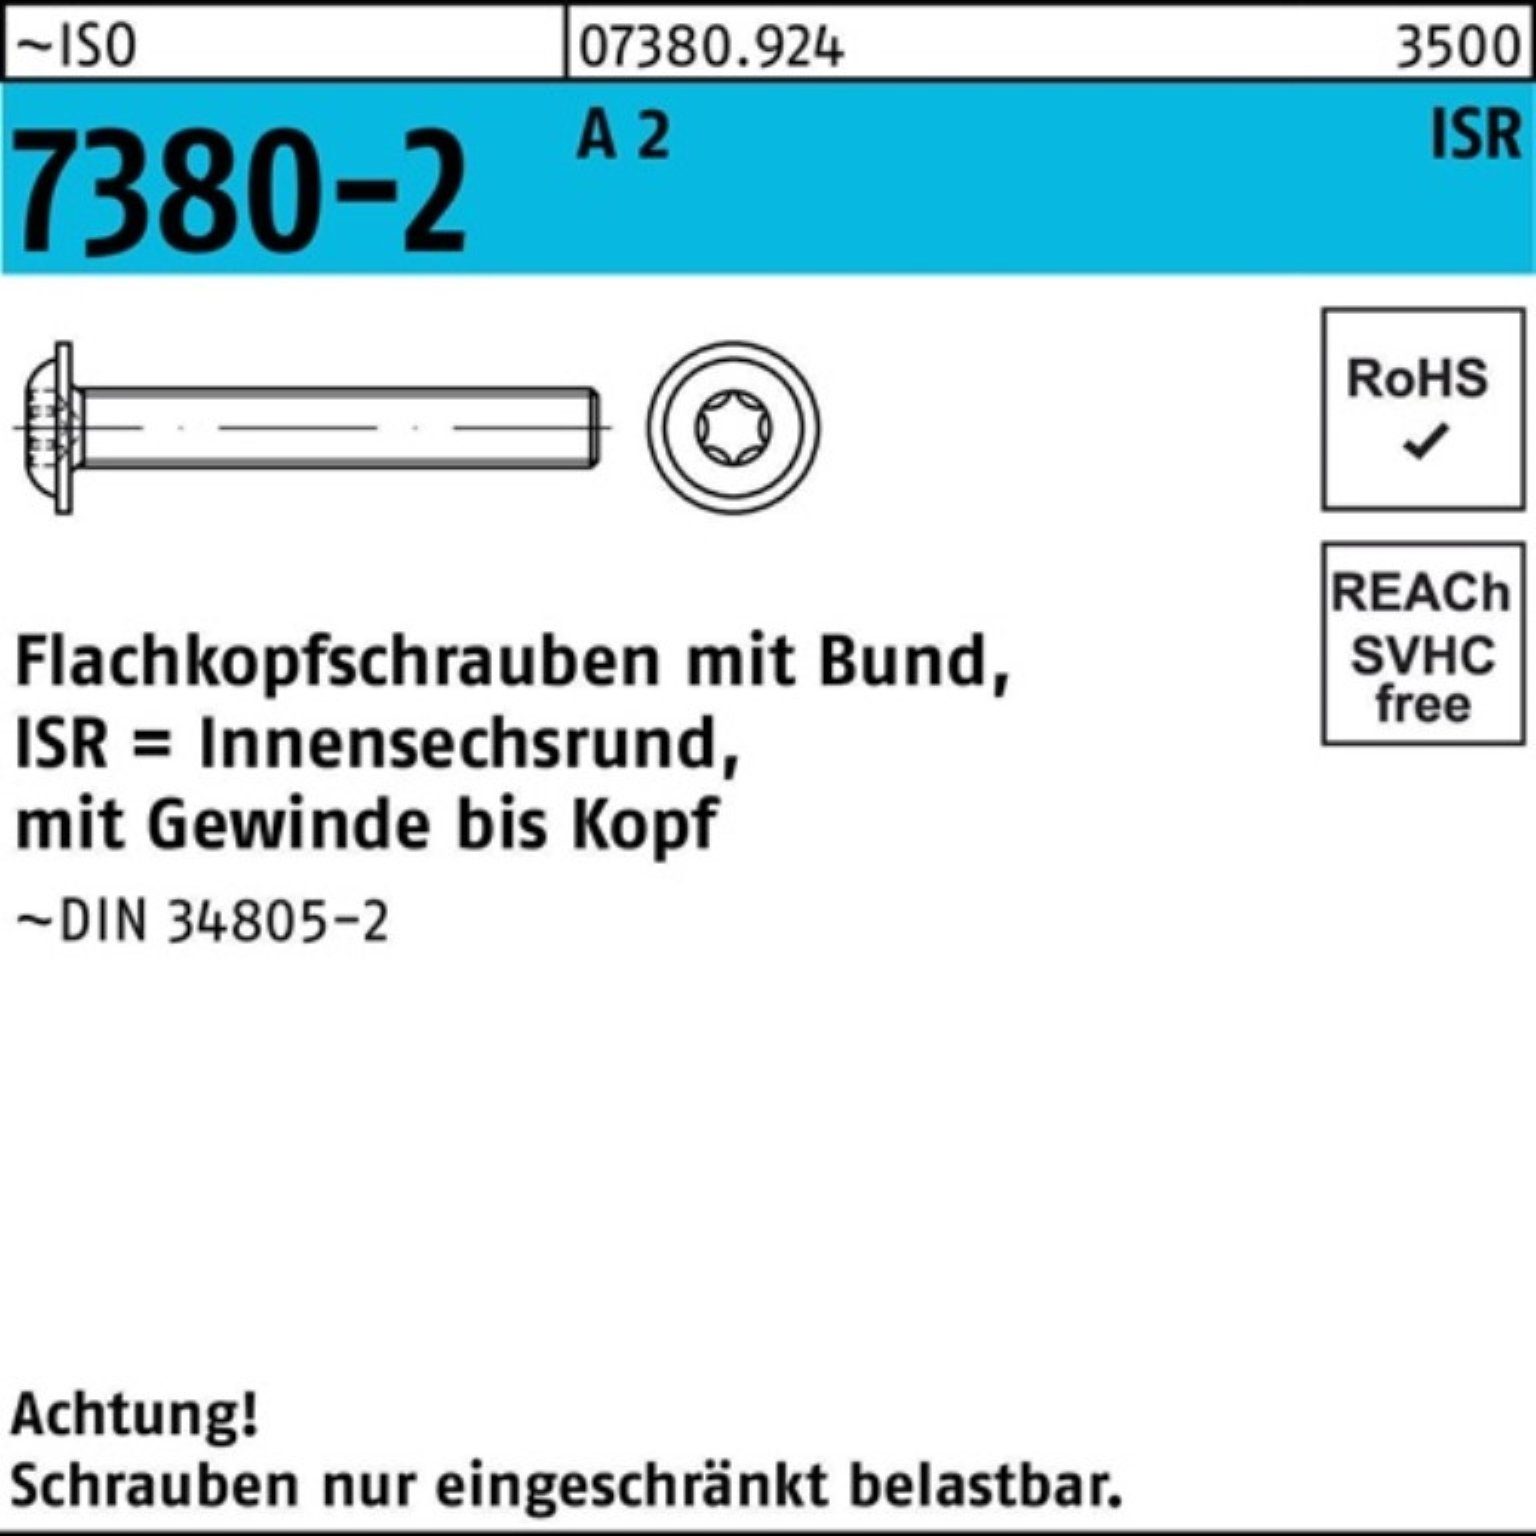 Bund/ISR 2 ISO Pack 200 A VG Flachkopfschraube 7380-2 200er M8x 10-T40 Reyher Schraube